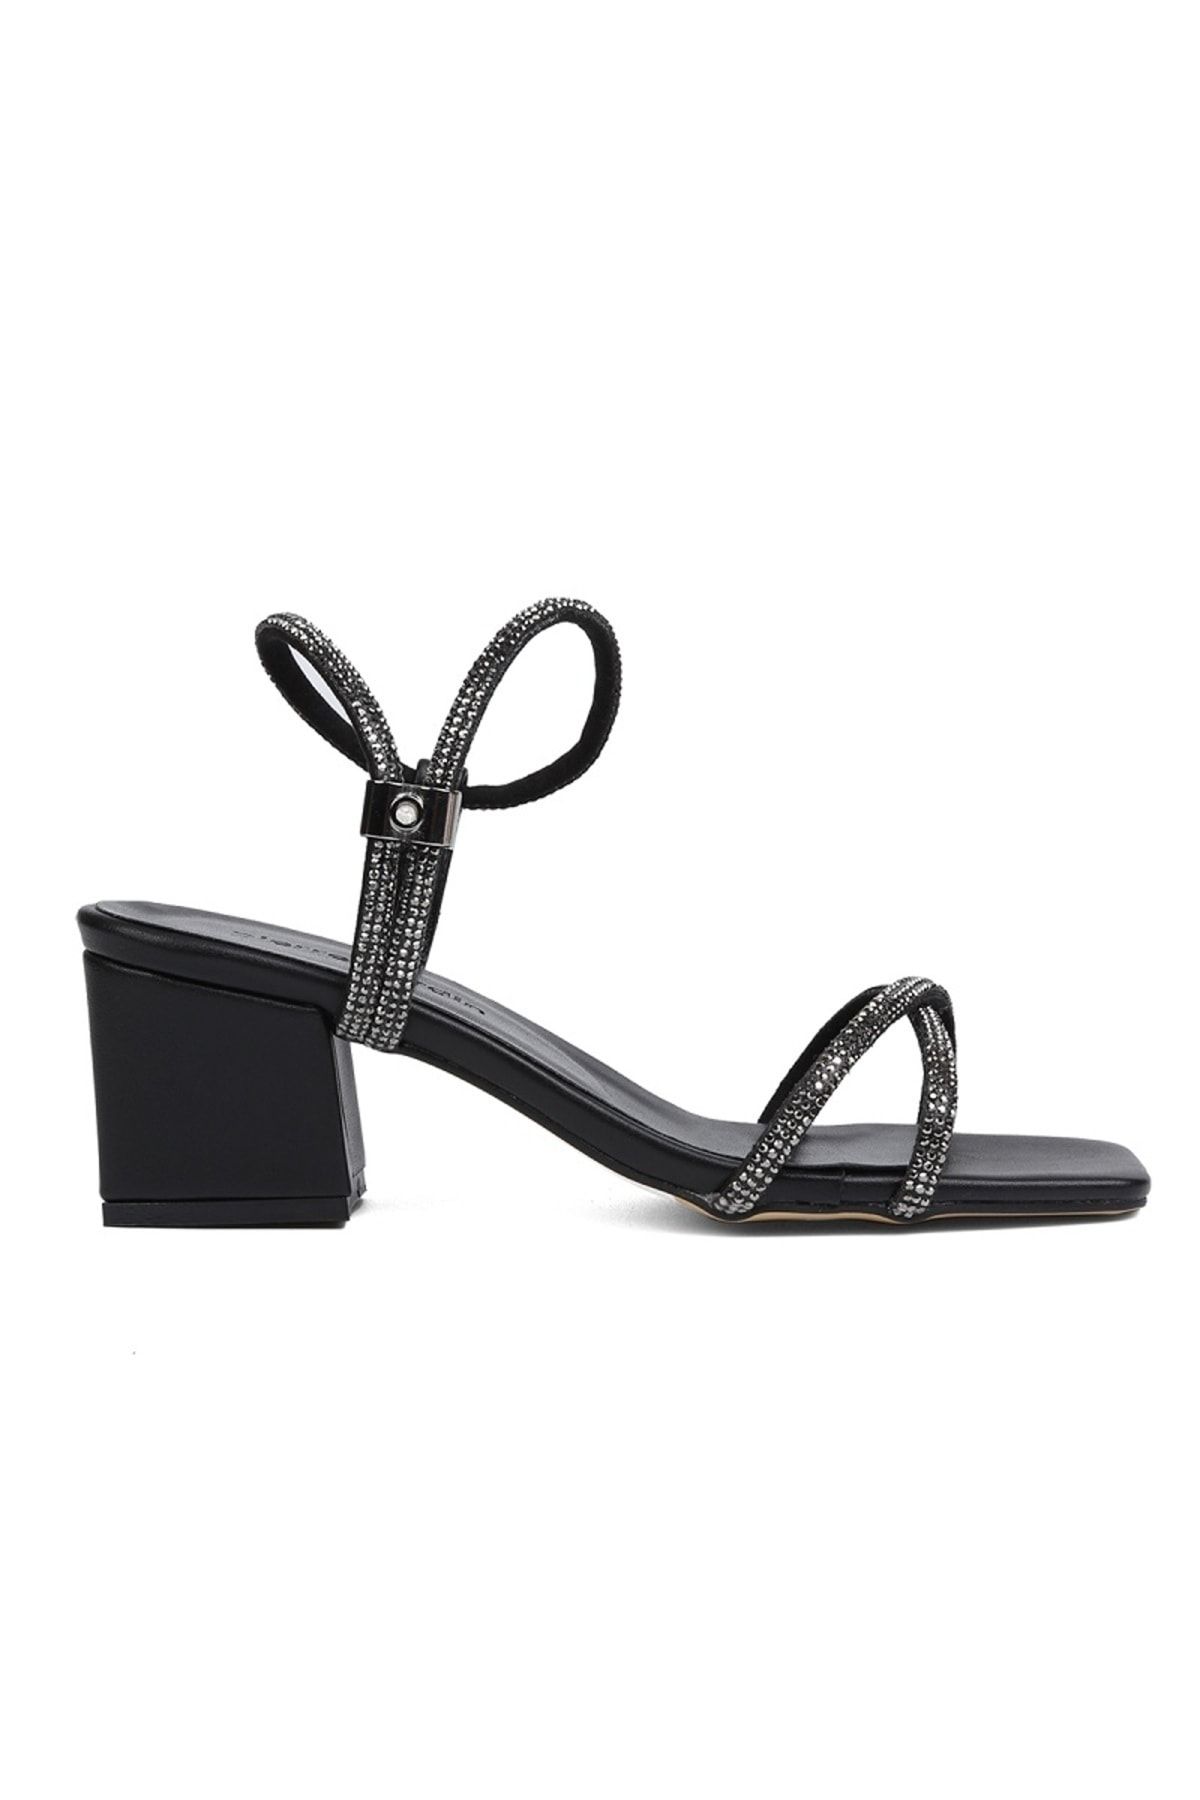 Pierre Cardin ® | PC-52286-Siyah Taşlı Kadın Topuklu Ayakkabı